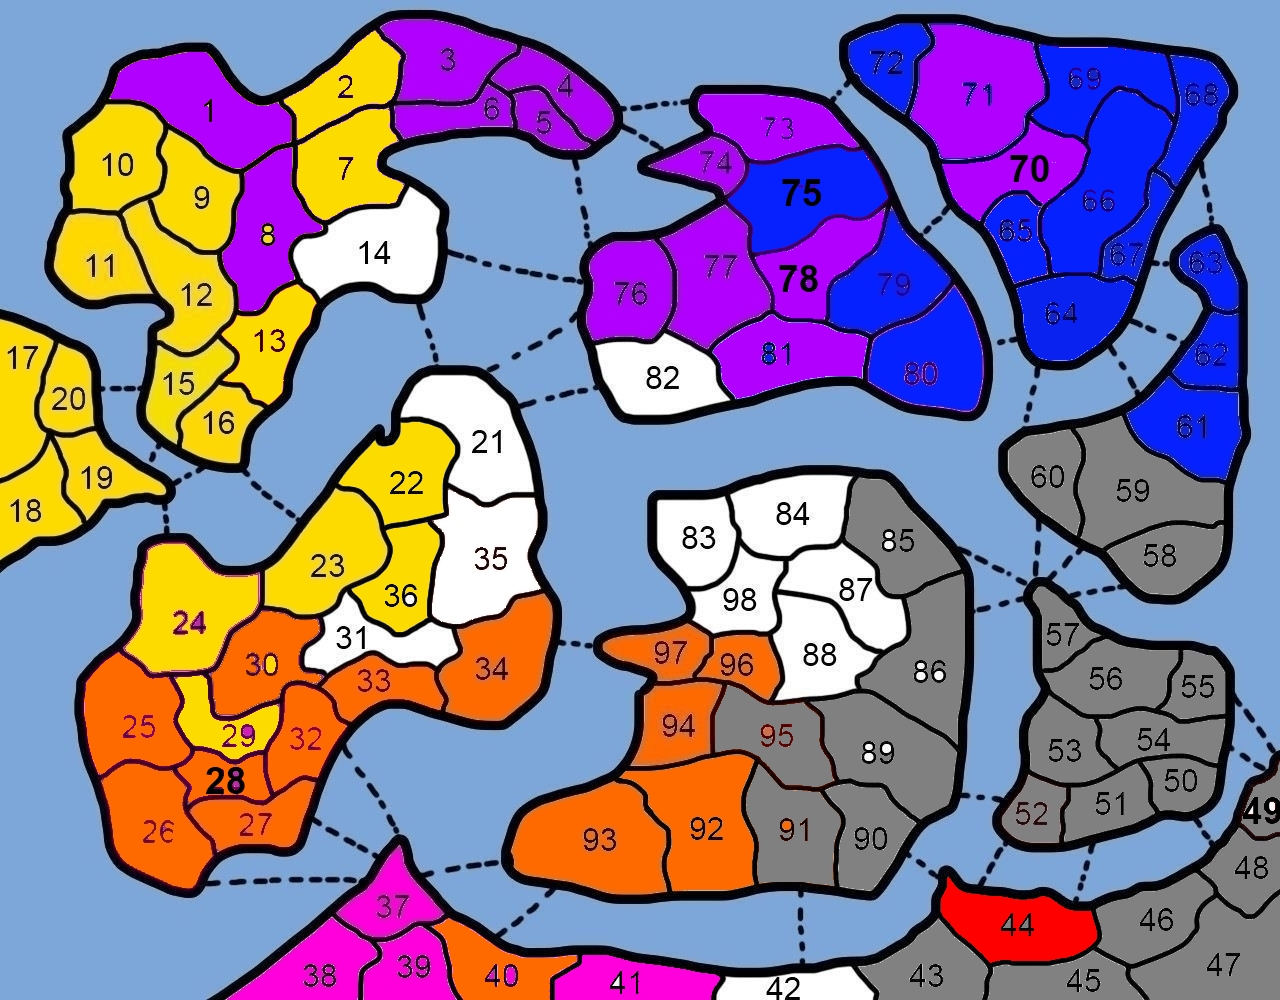 war-of-rd-map8 (1).jpg